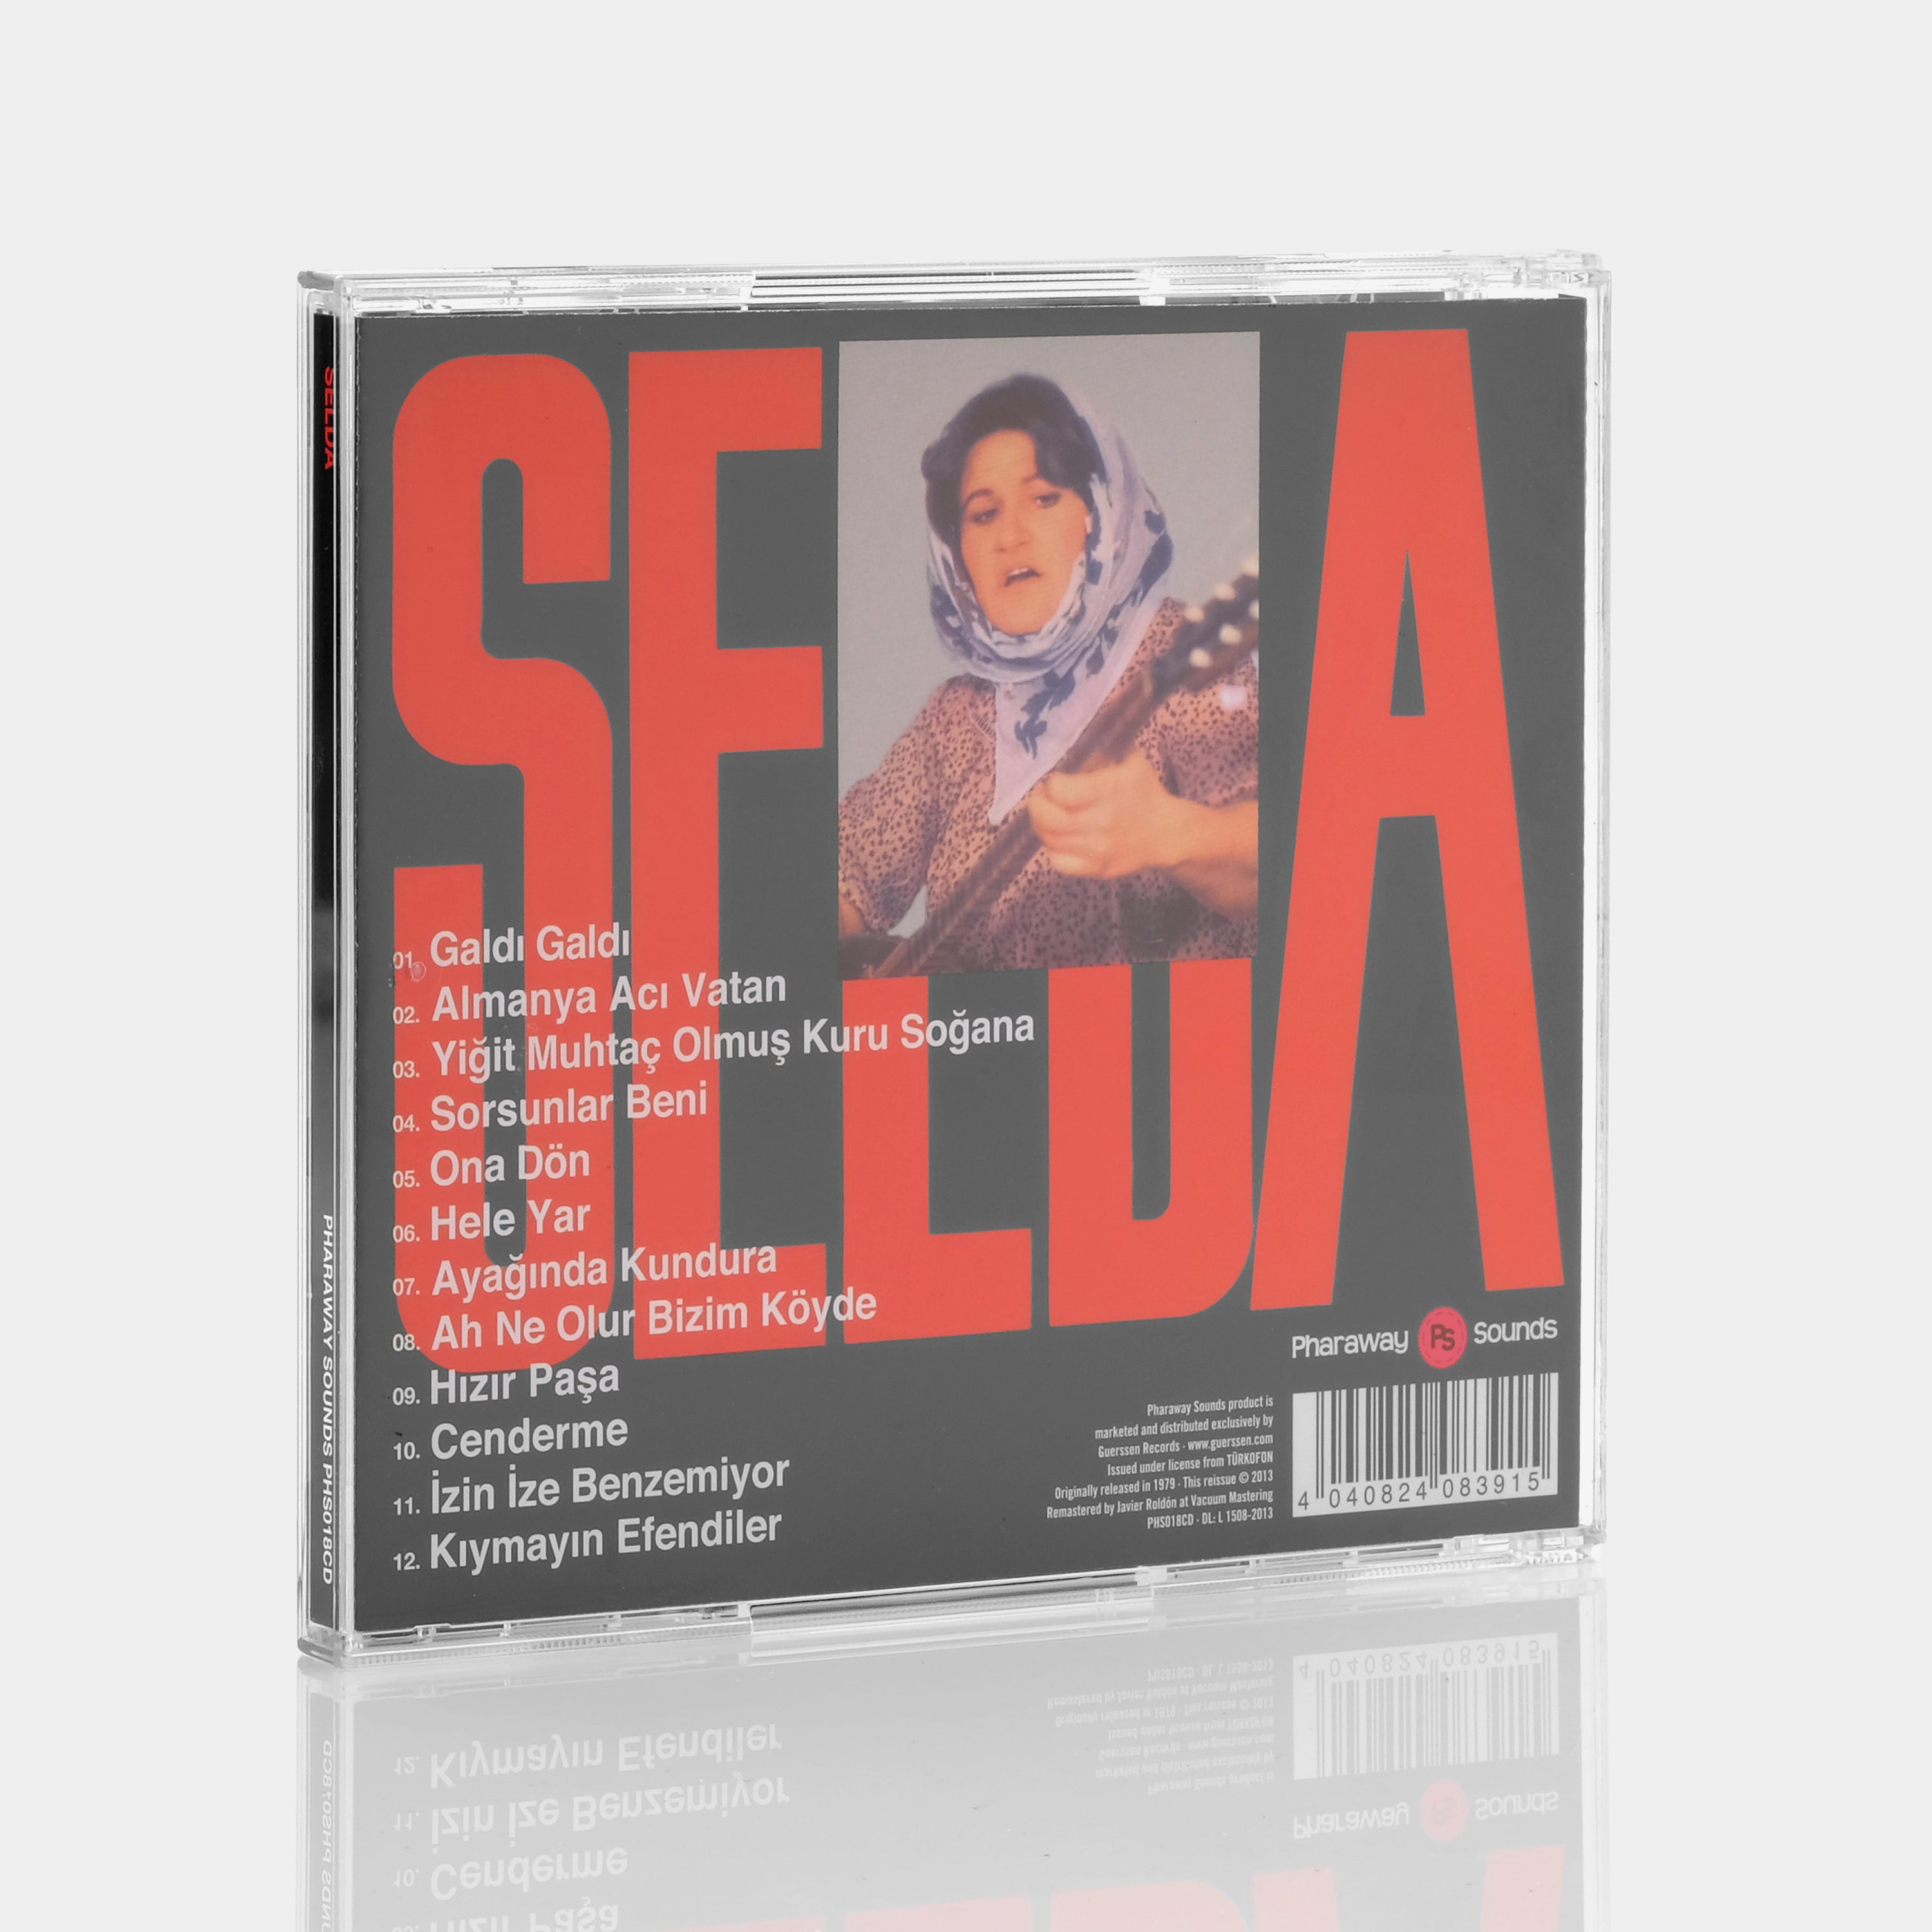 Selda - Selda CD